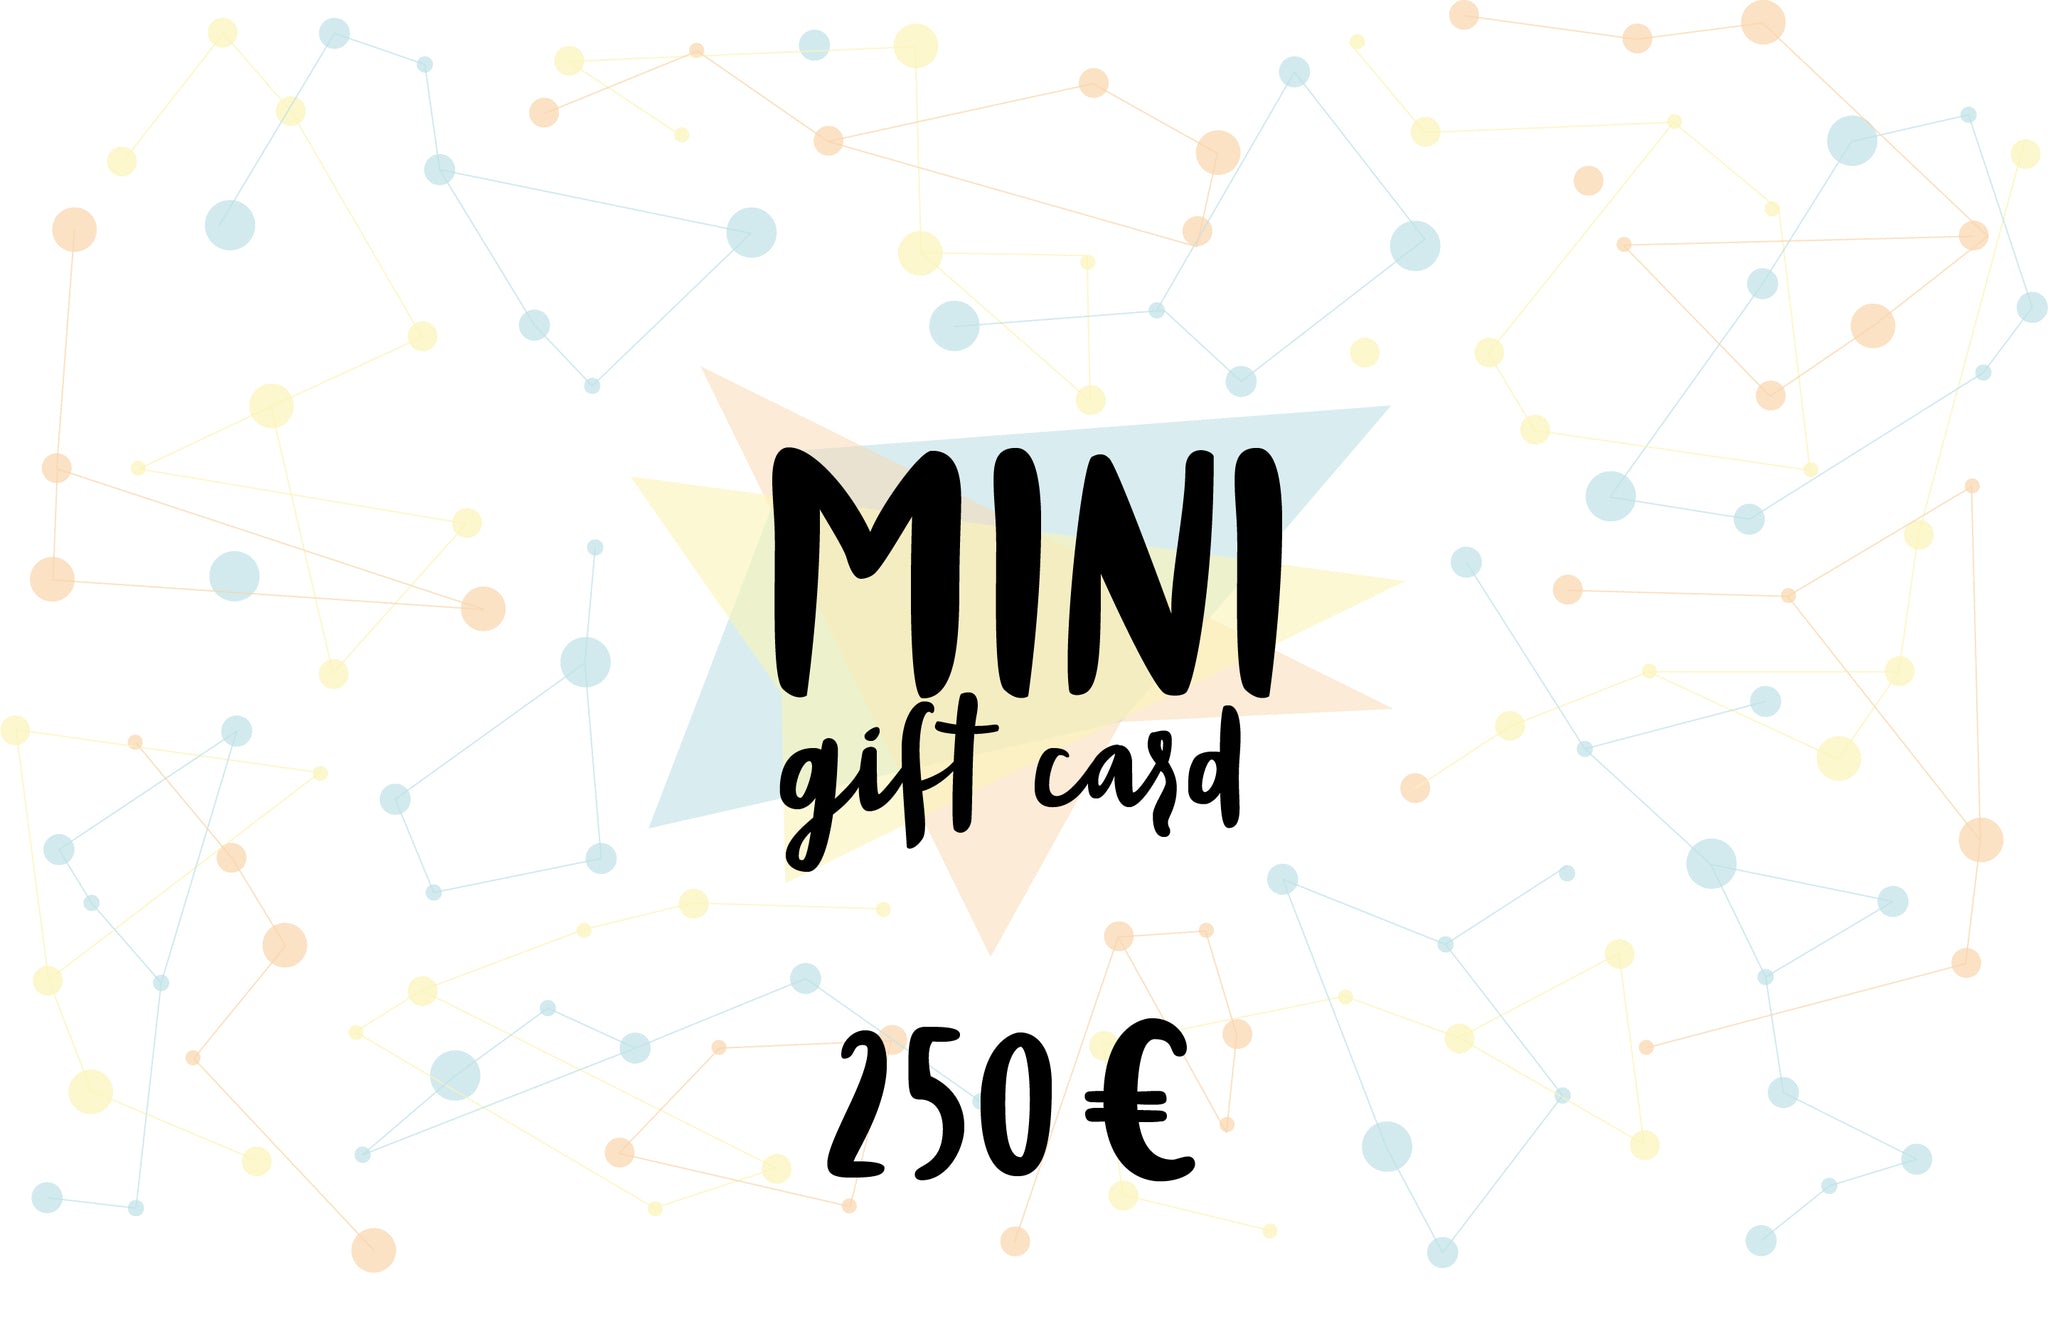 MINI Gift card, value of 250 euro